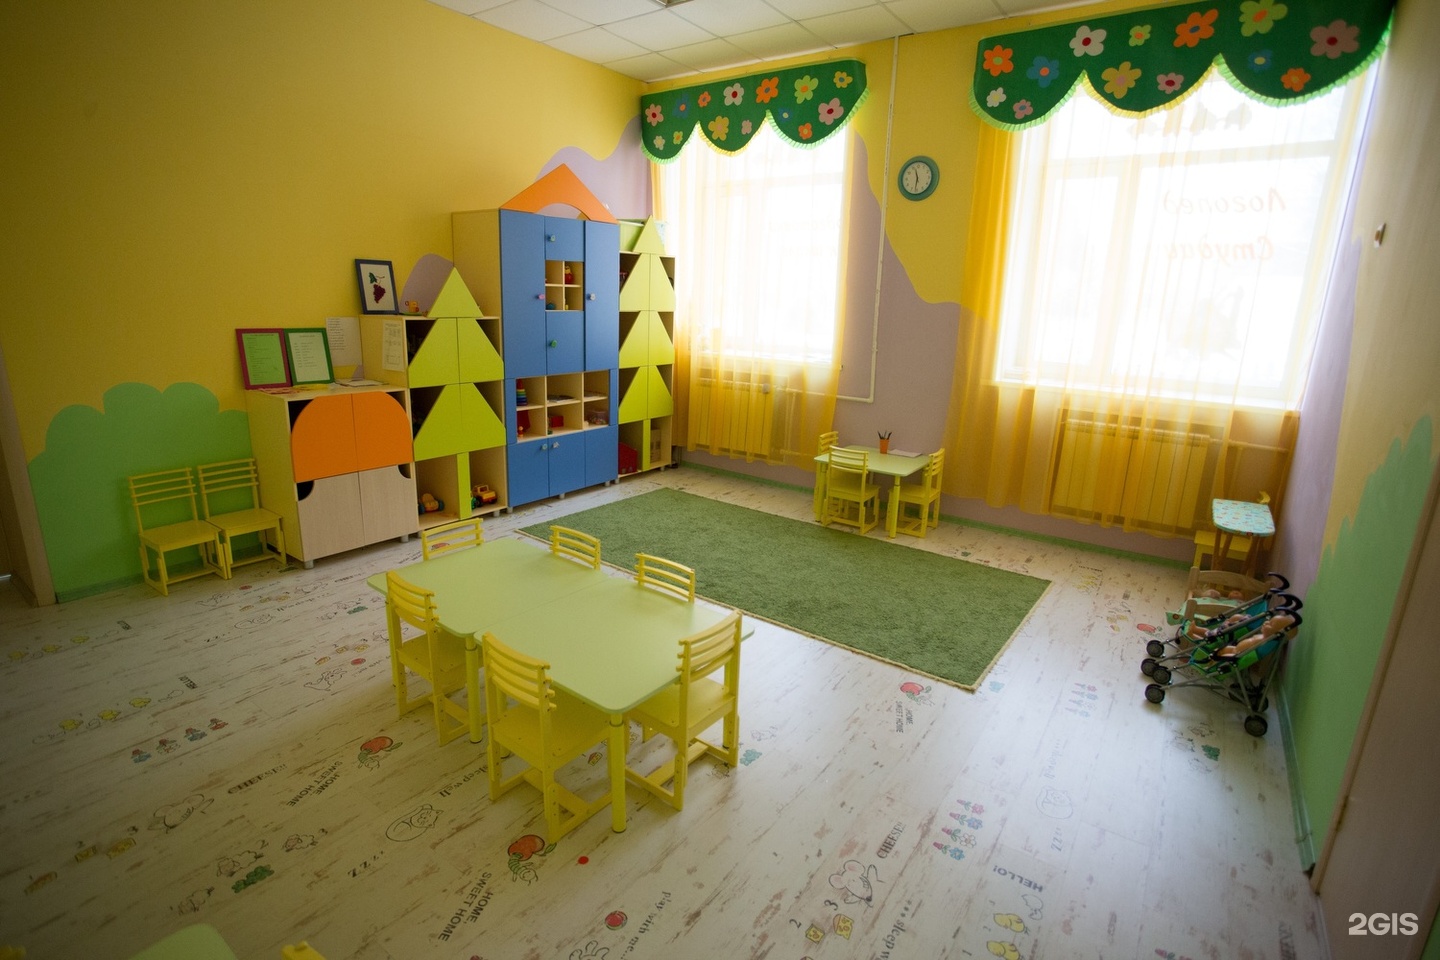 фото детского сада внутри